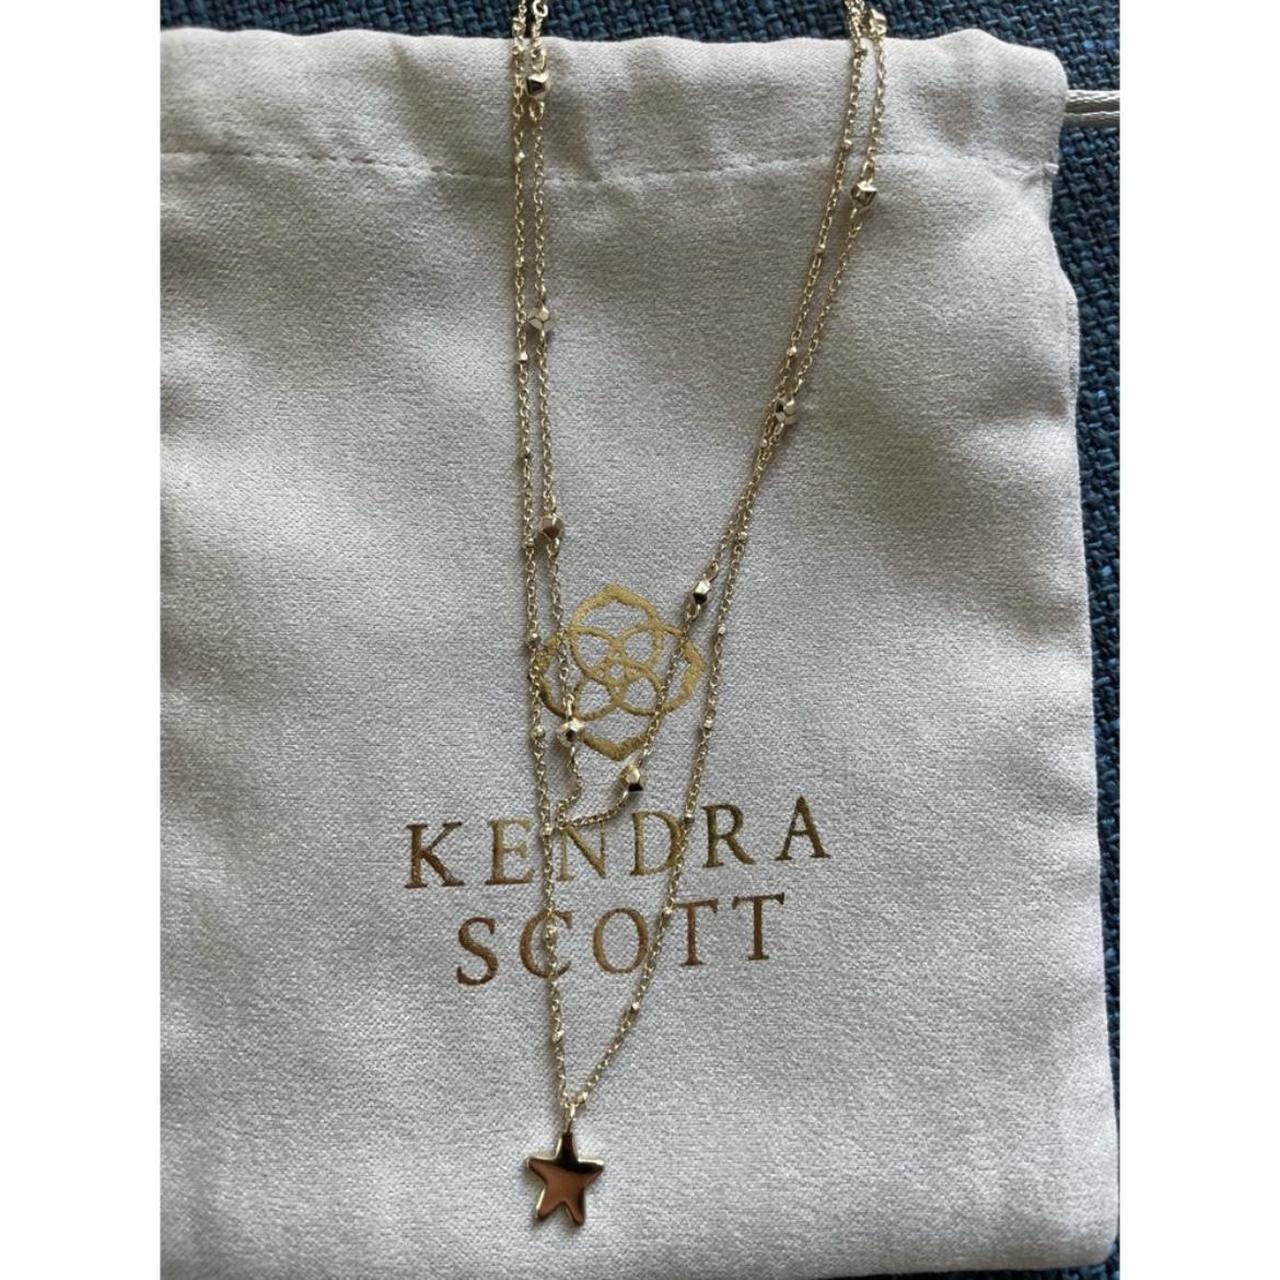 scott star necklace